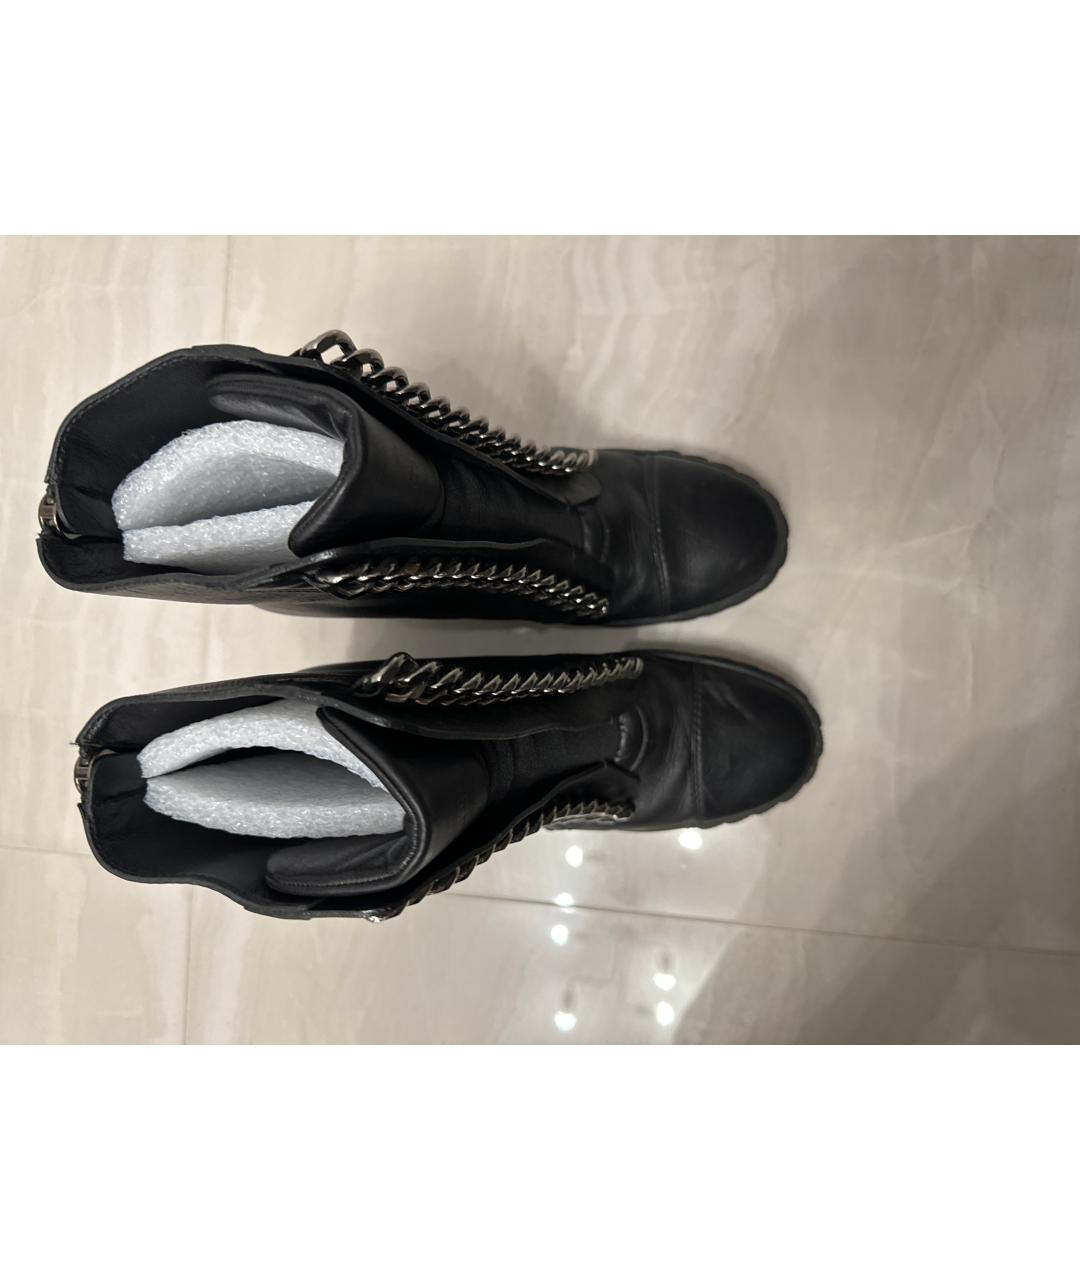 CASADEI Черные кожаные ботинки, фото 3